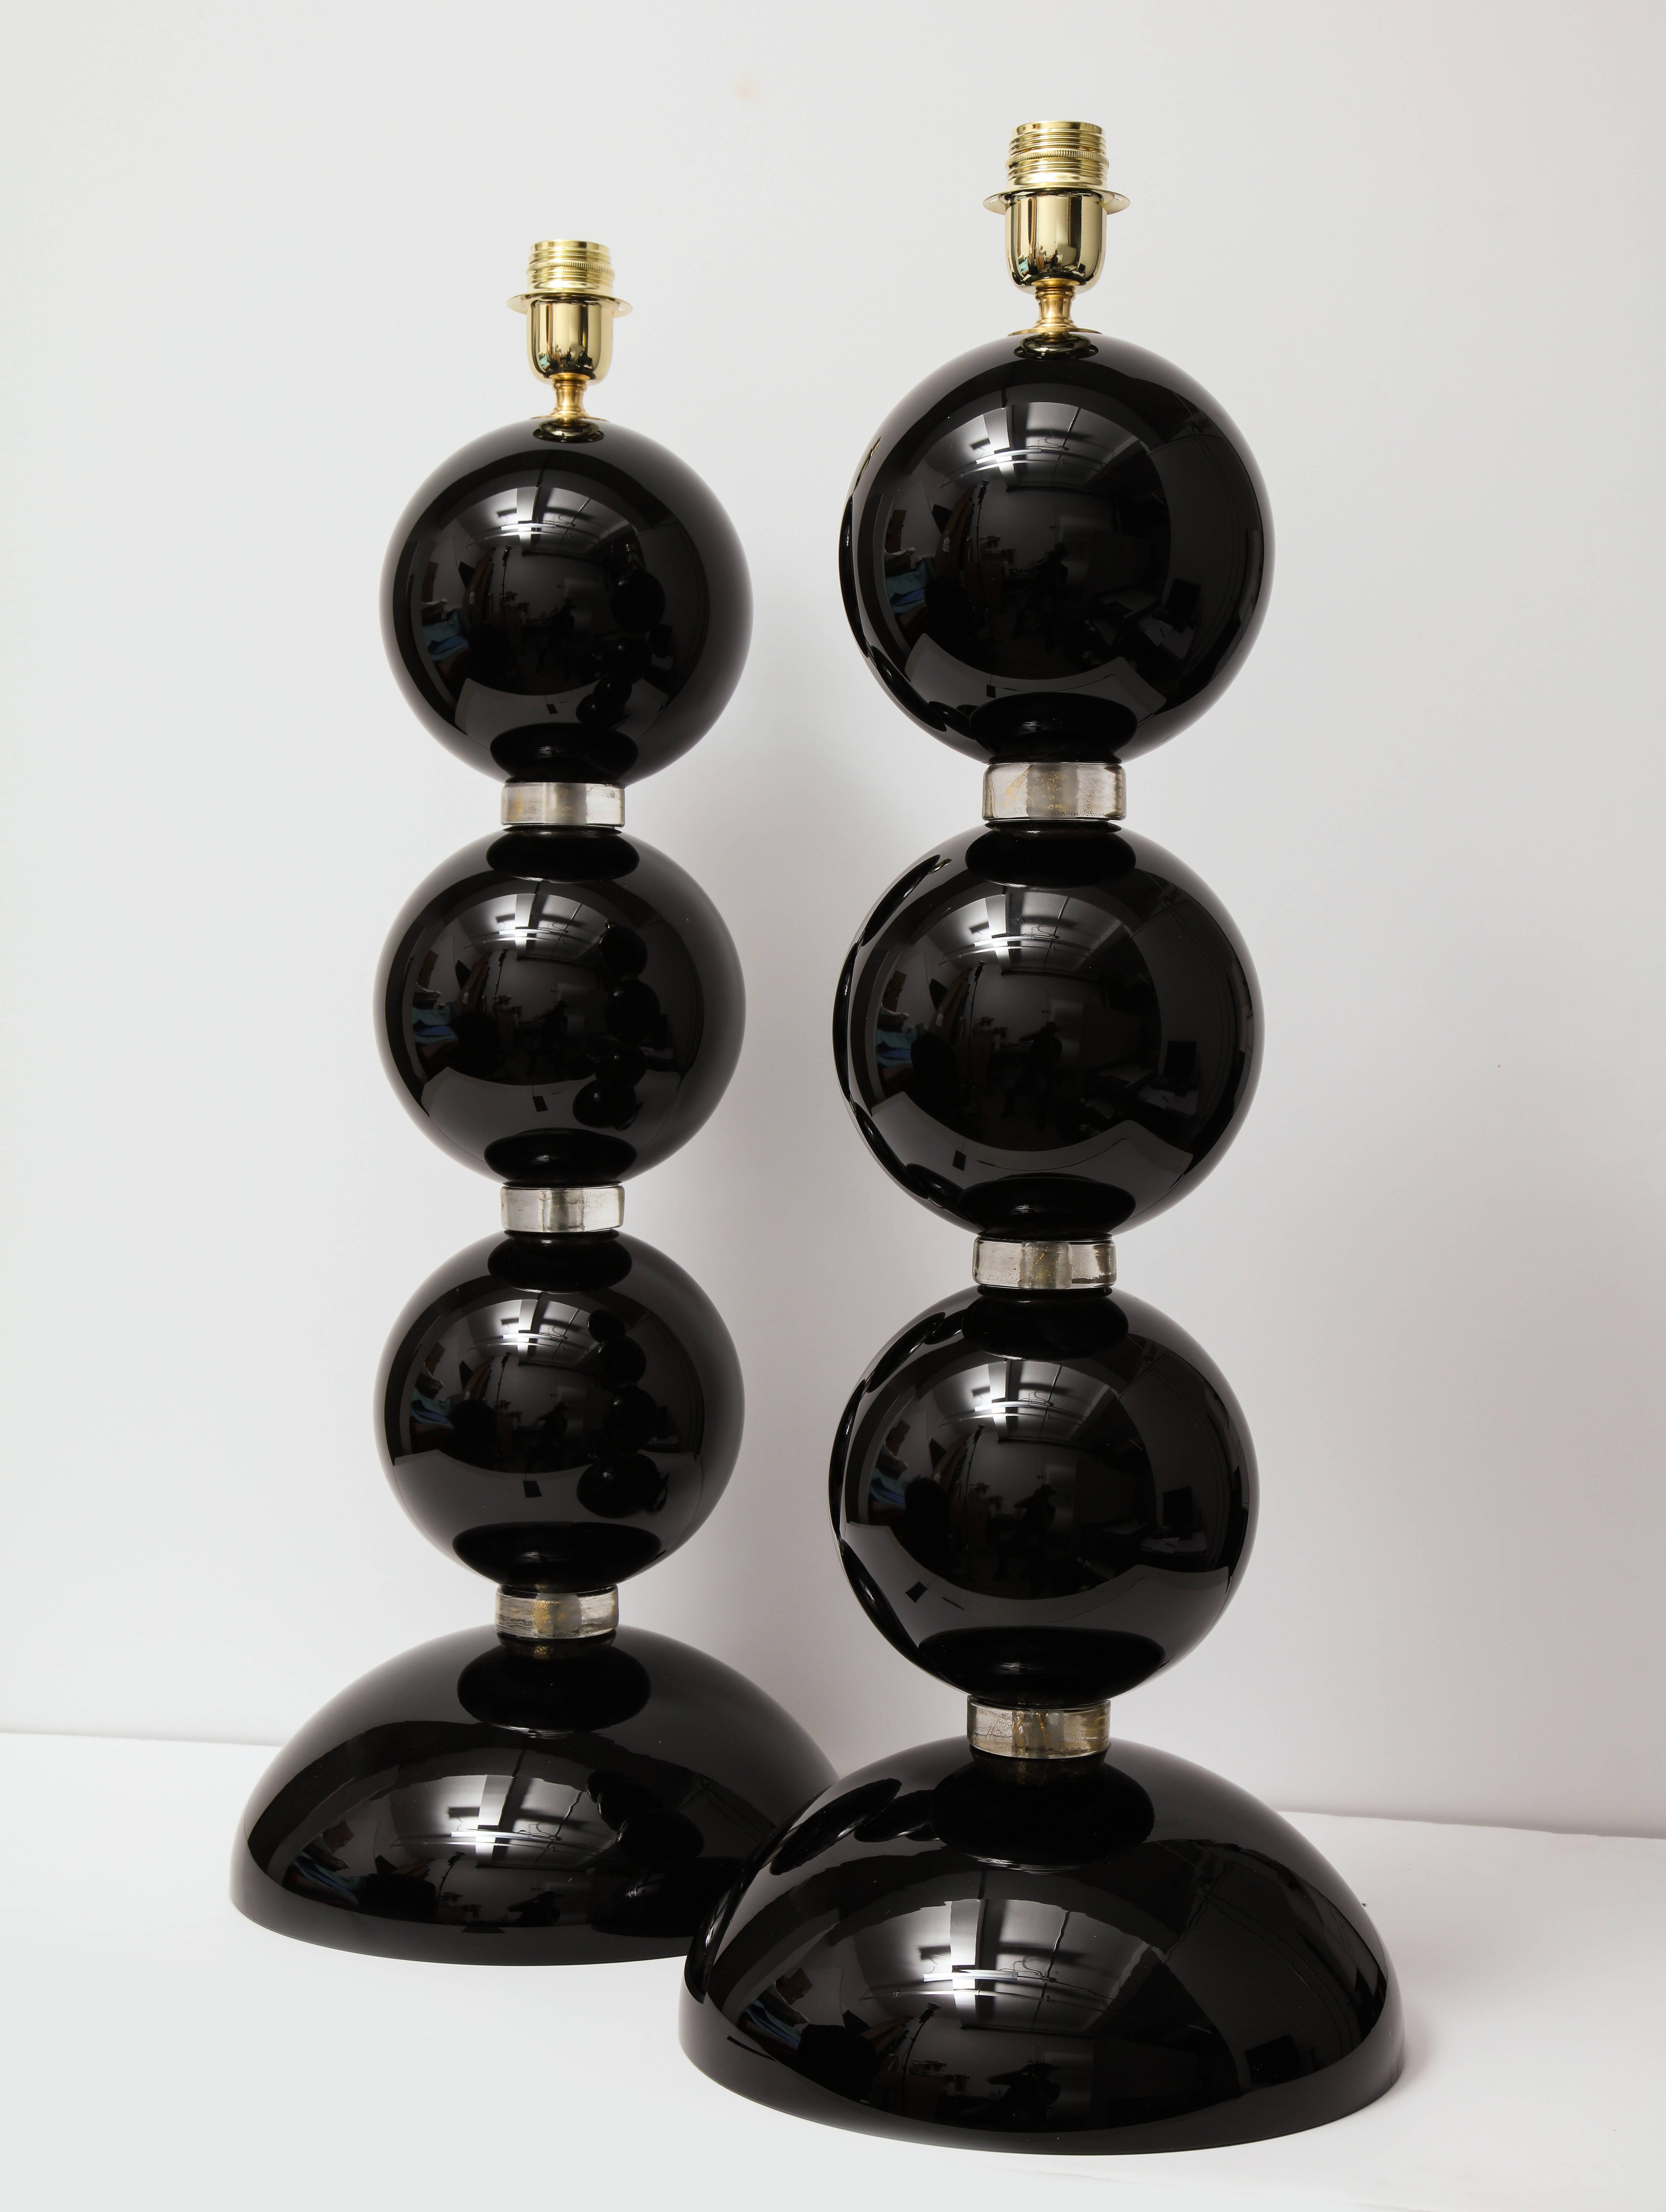 Paire de lampes sphériques en verre soufflé à la main de Murano, noir et or, de dimensions impressionnantes. Les sphères noires en verre de Murano sont séparées par des anneaux en verre transparent infusés de mouchetures d'or 23 carats, ce qui leur